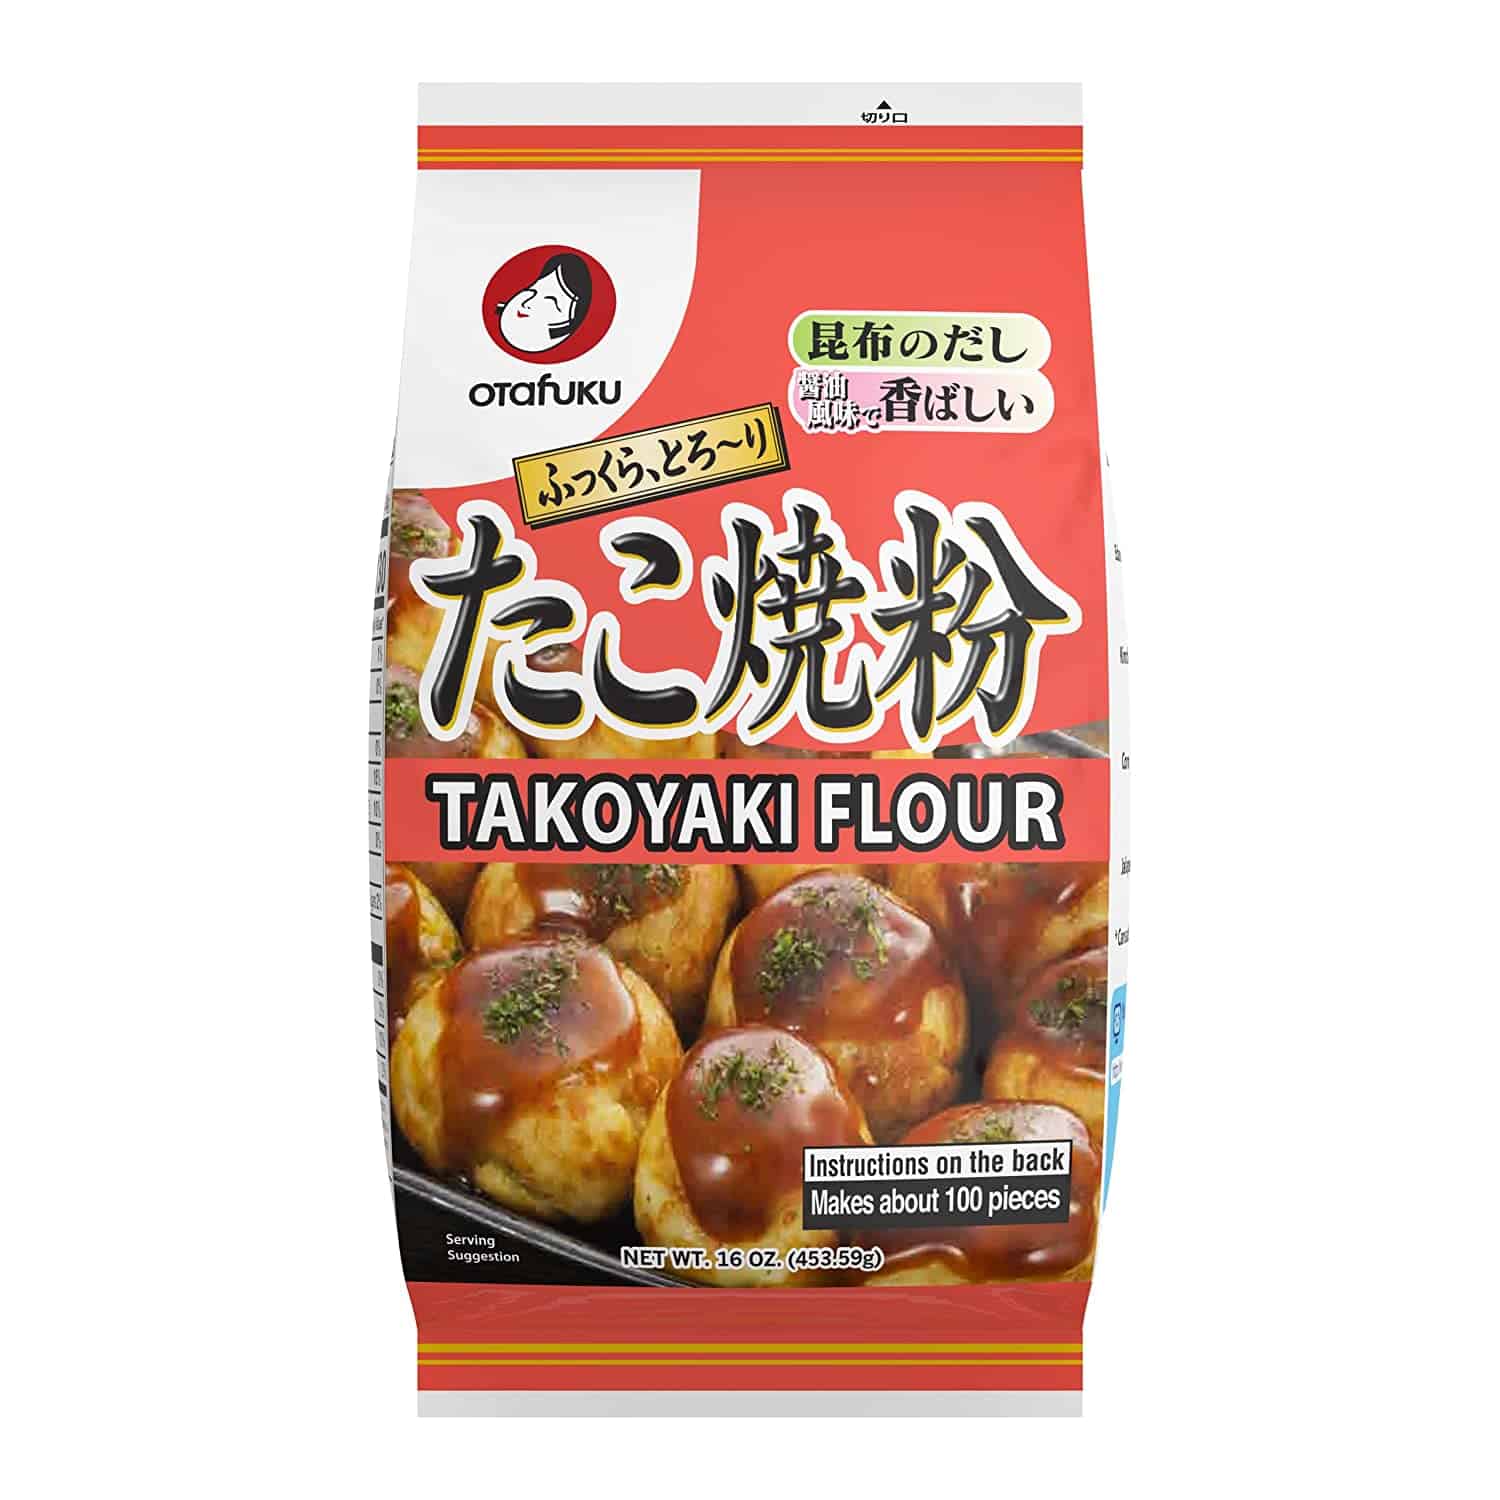 Motsoako o motle ka ho fetesisa oa batter oa takoyaki- Flour ea Otafuku Takoyaki bakeng sa Takoyaki ea Japane